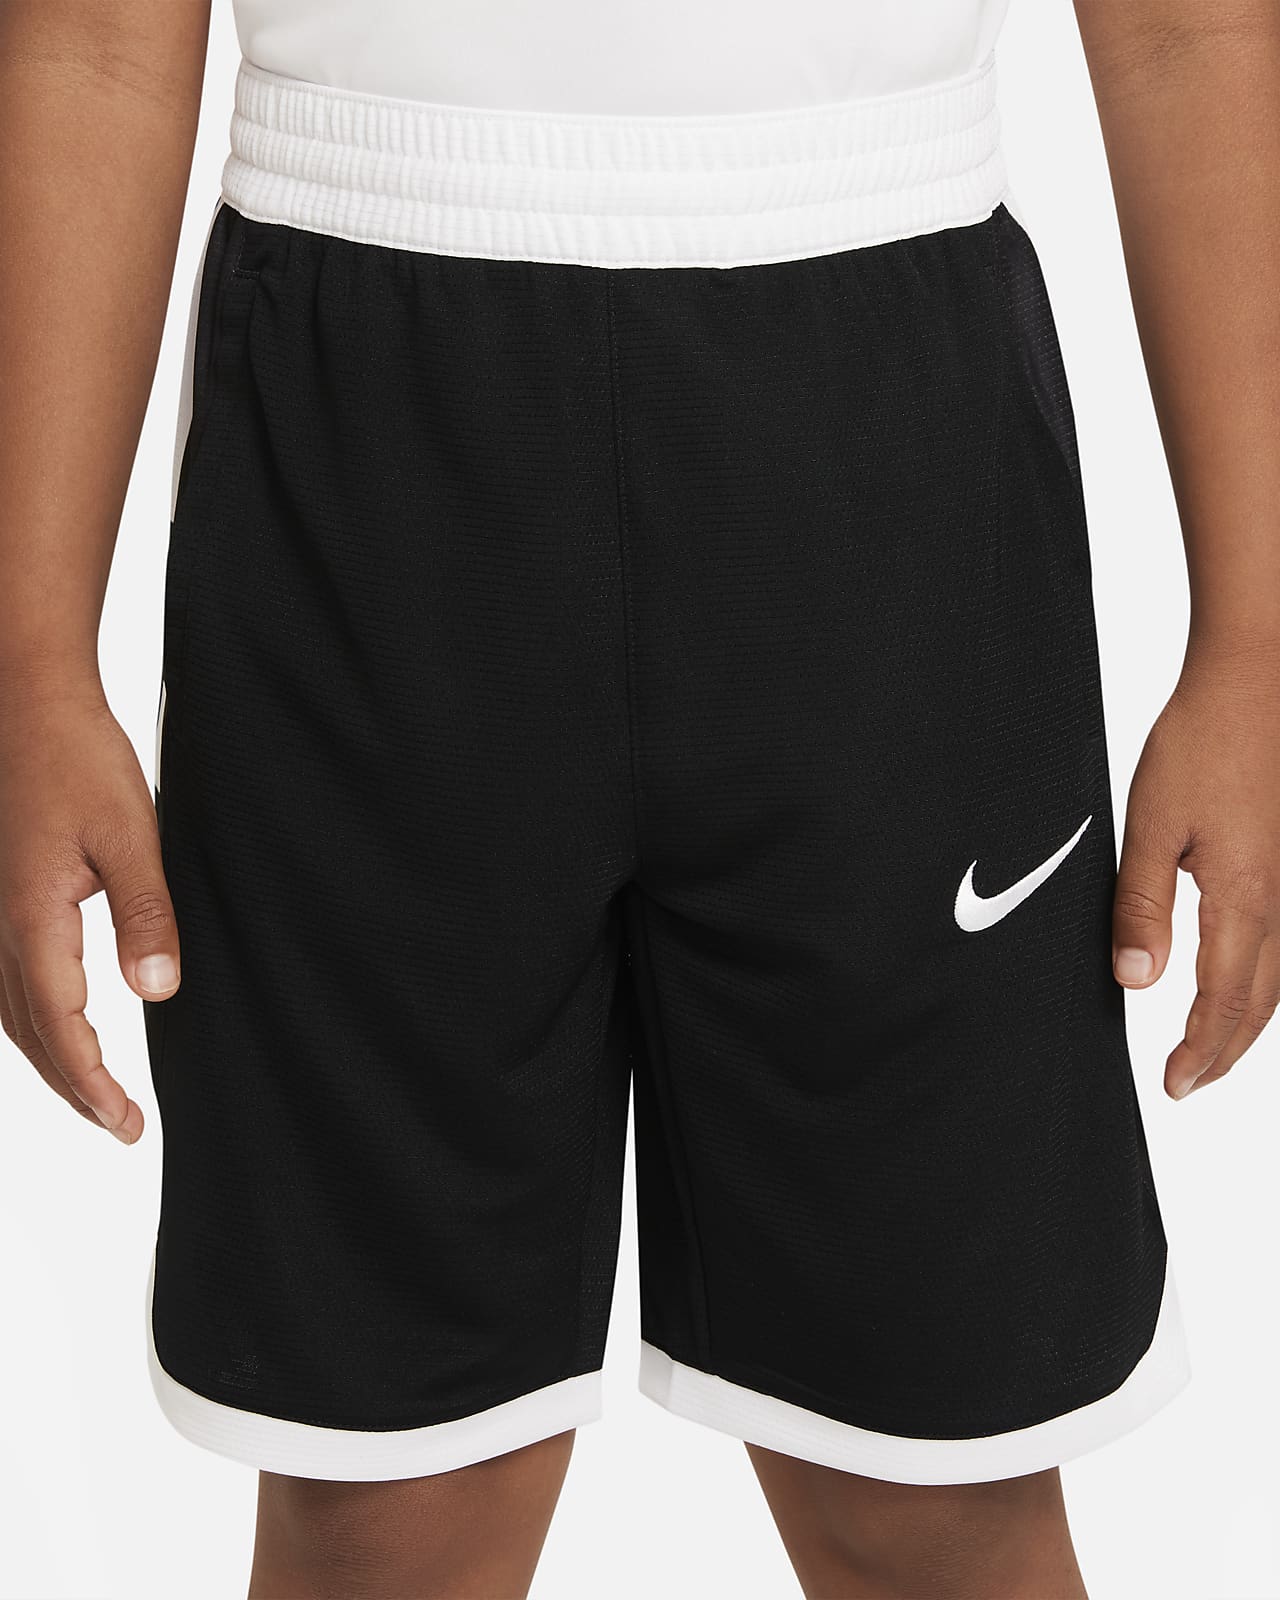 Rudyard Kipling maïs Kwaadaardige tumor Nike Dri-FIT Elite Big Kids' (Boys') Basketball Shorts. Nike.com